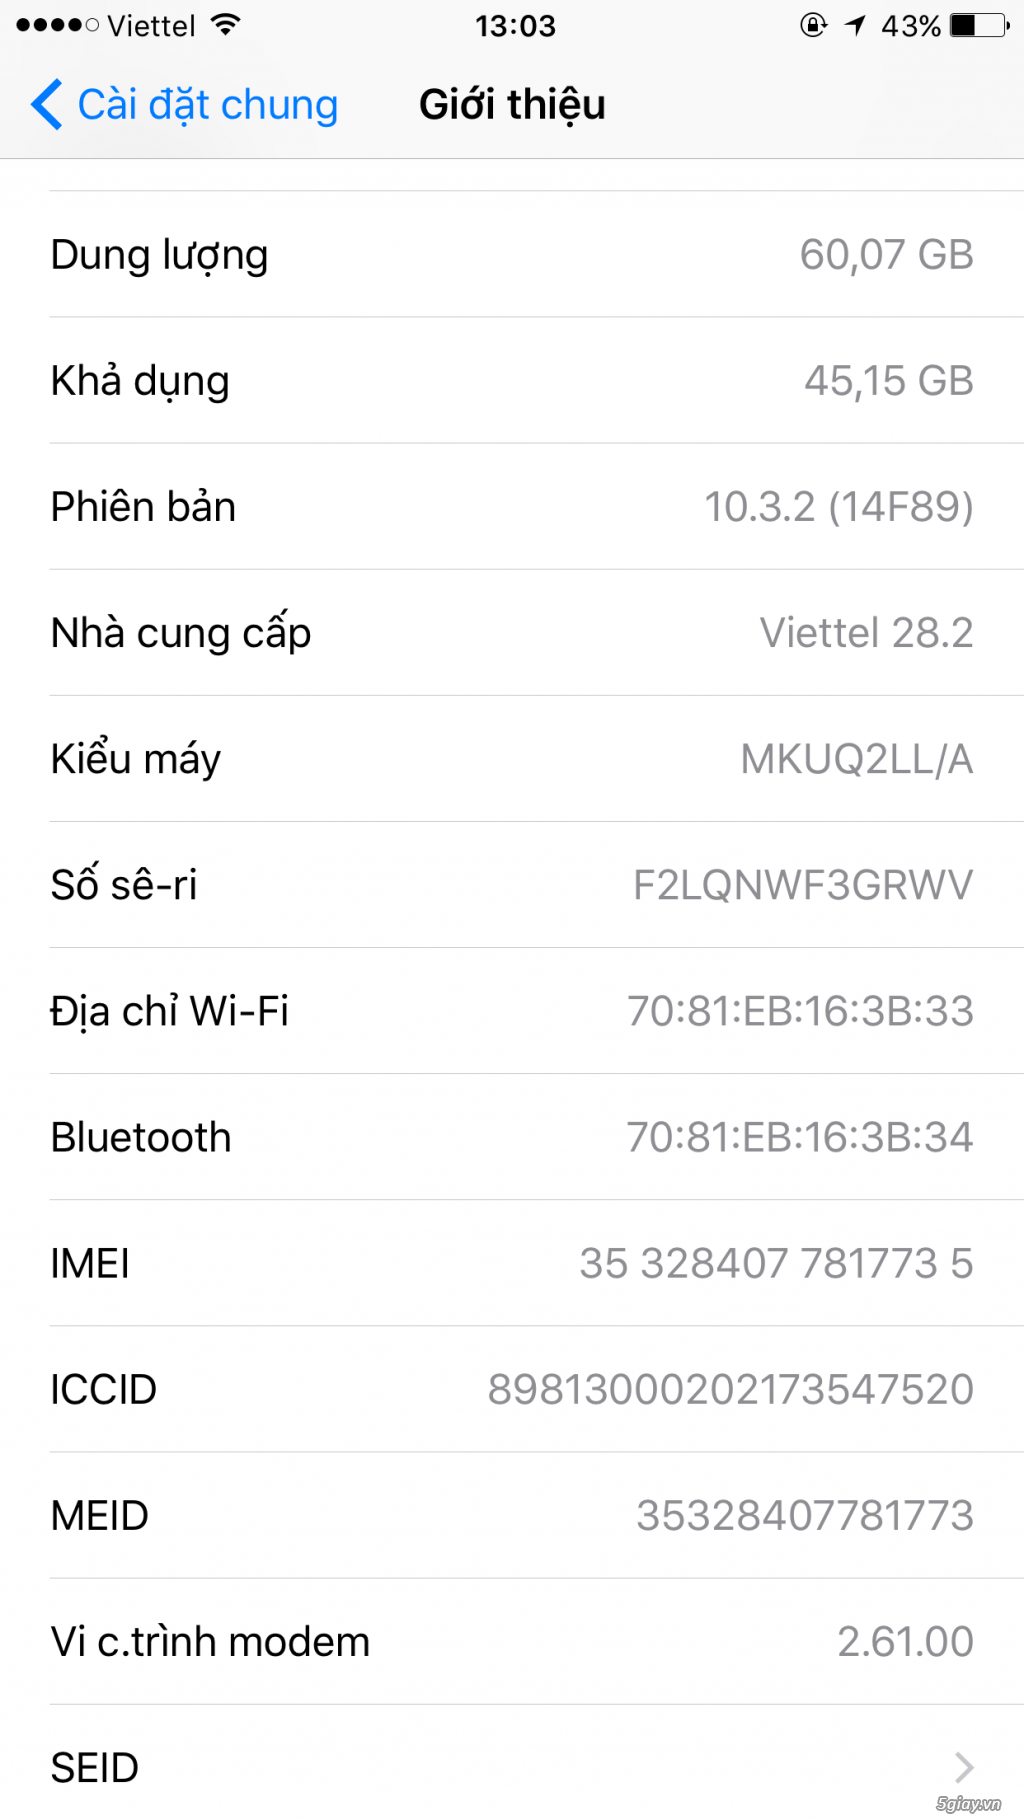 Iphone 6s plus lock LL/A 64g lên vỏ 7plus đen nhám - 2